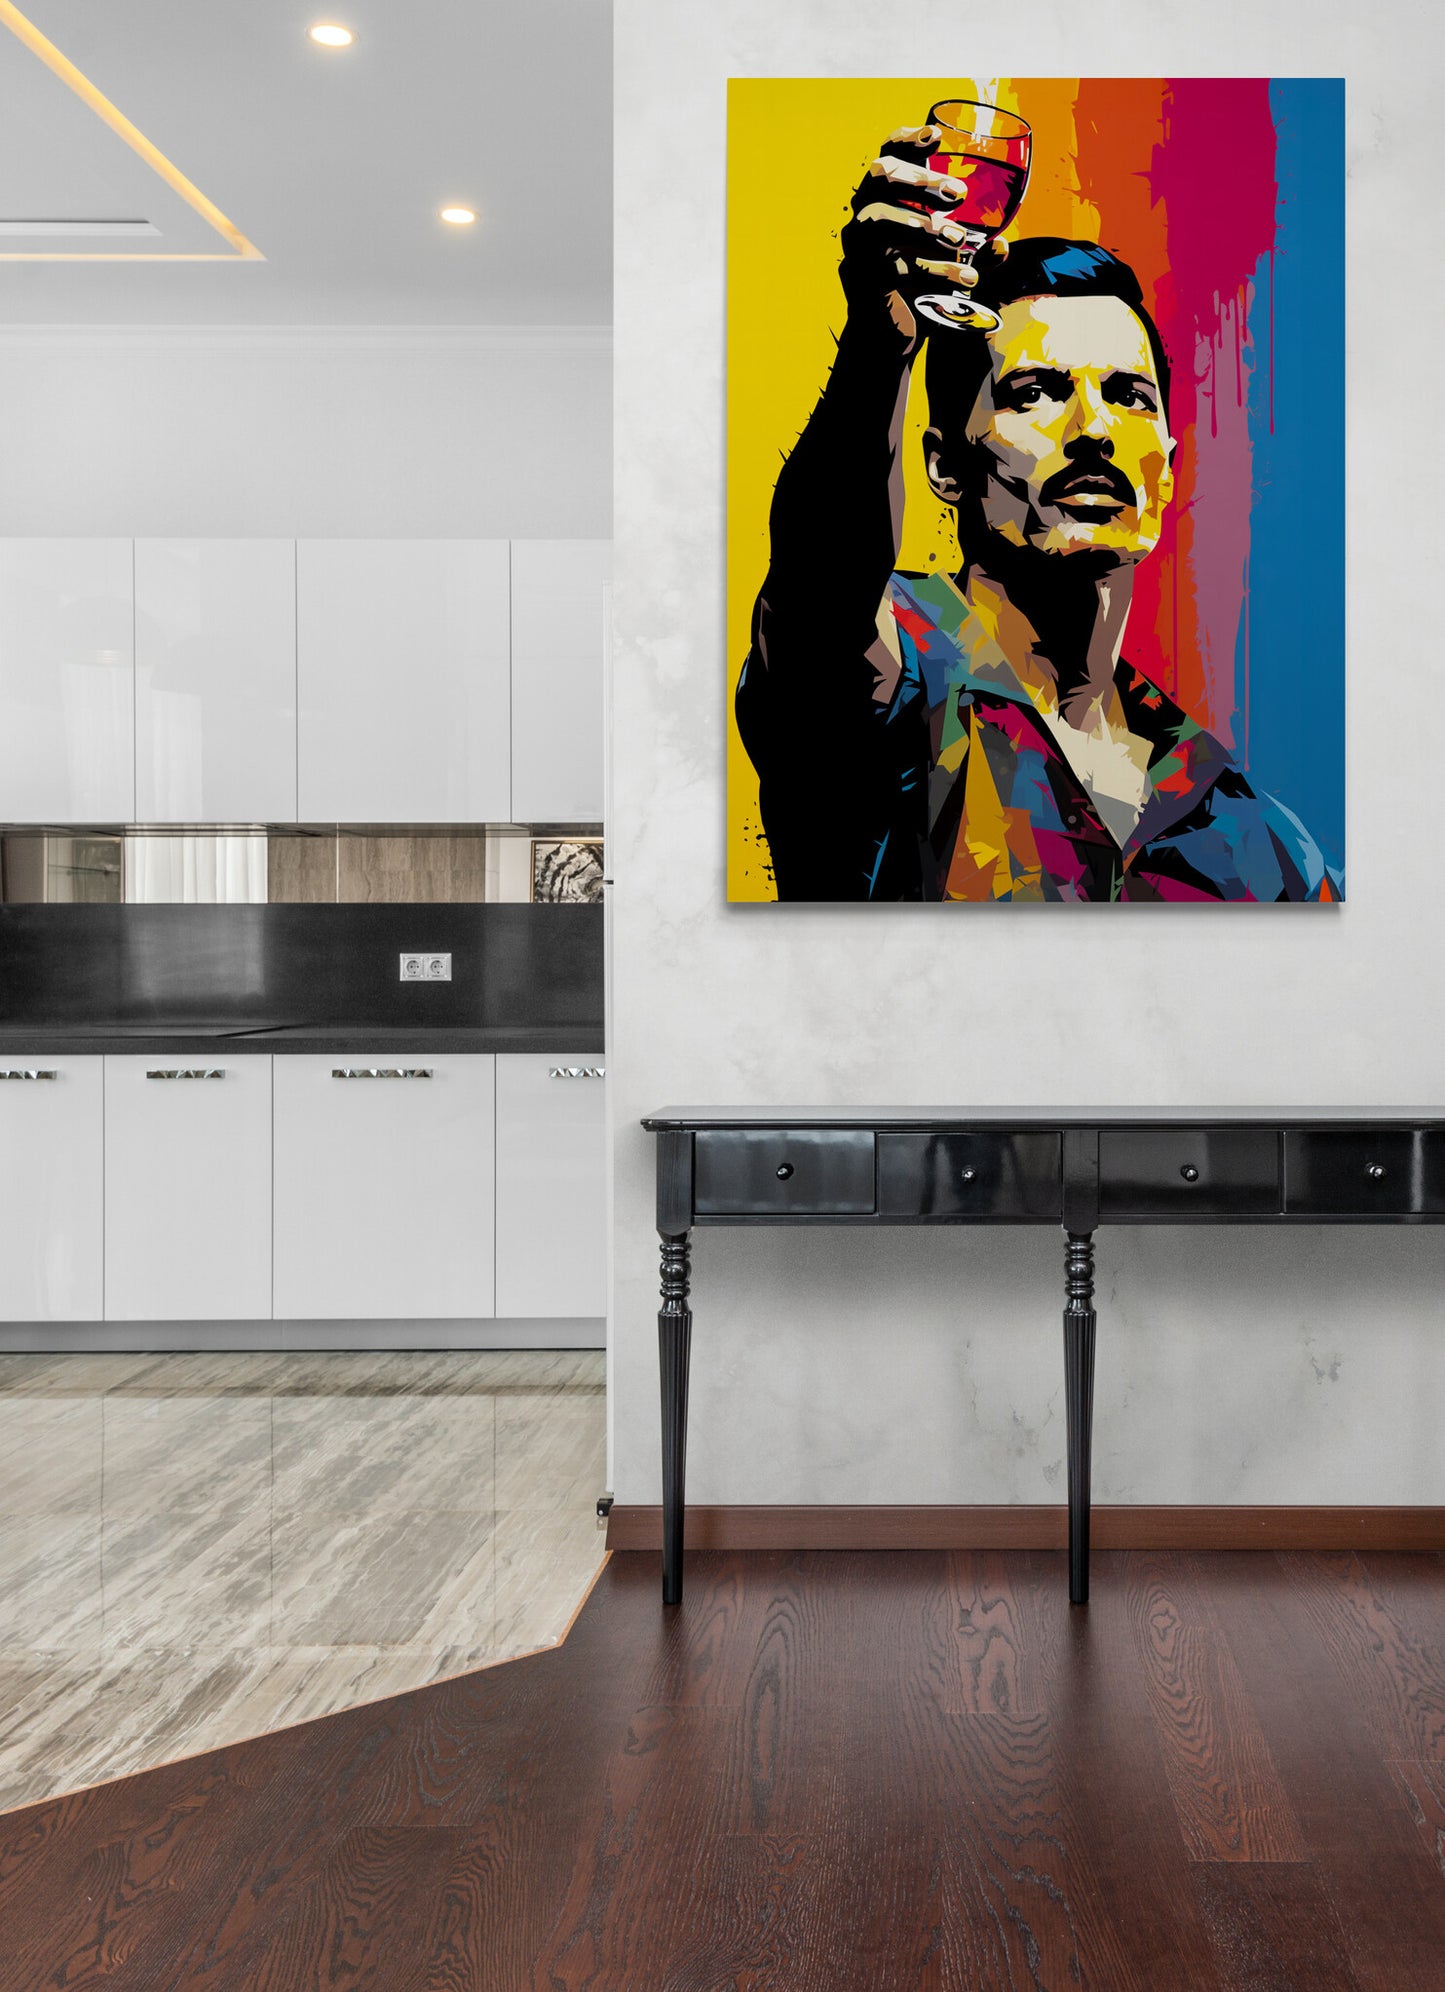 Dans une cuisine moderne et lumineuse, une toile colorée apporte une touche d'excentricité et de style.